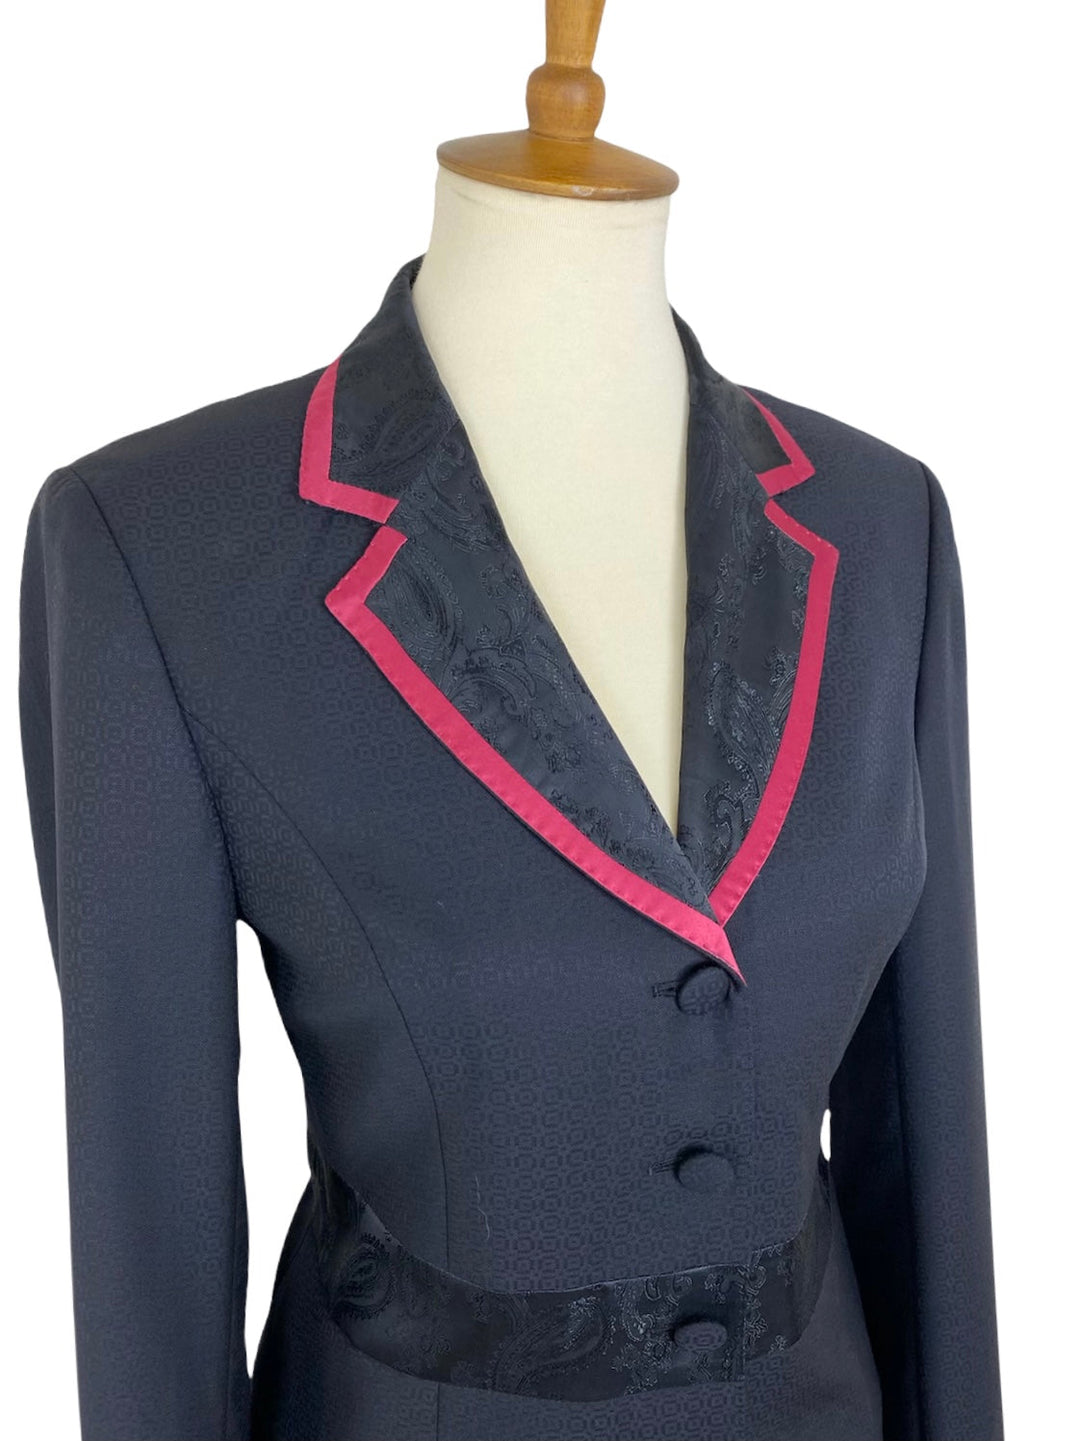 Black & Raspberry Showmanship Suit (Size 4) - Ref. 102